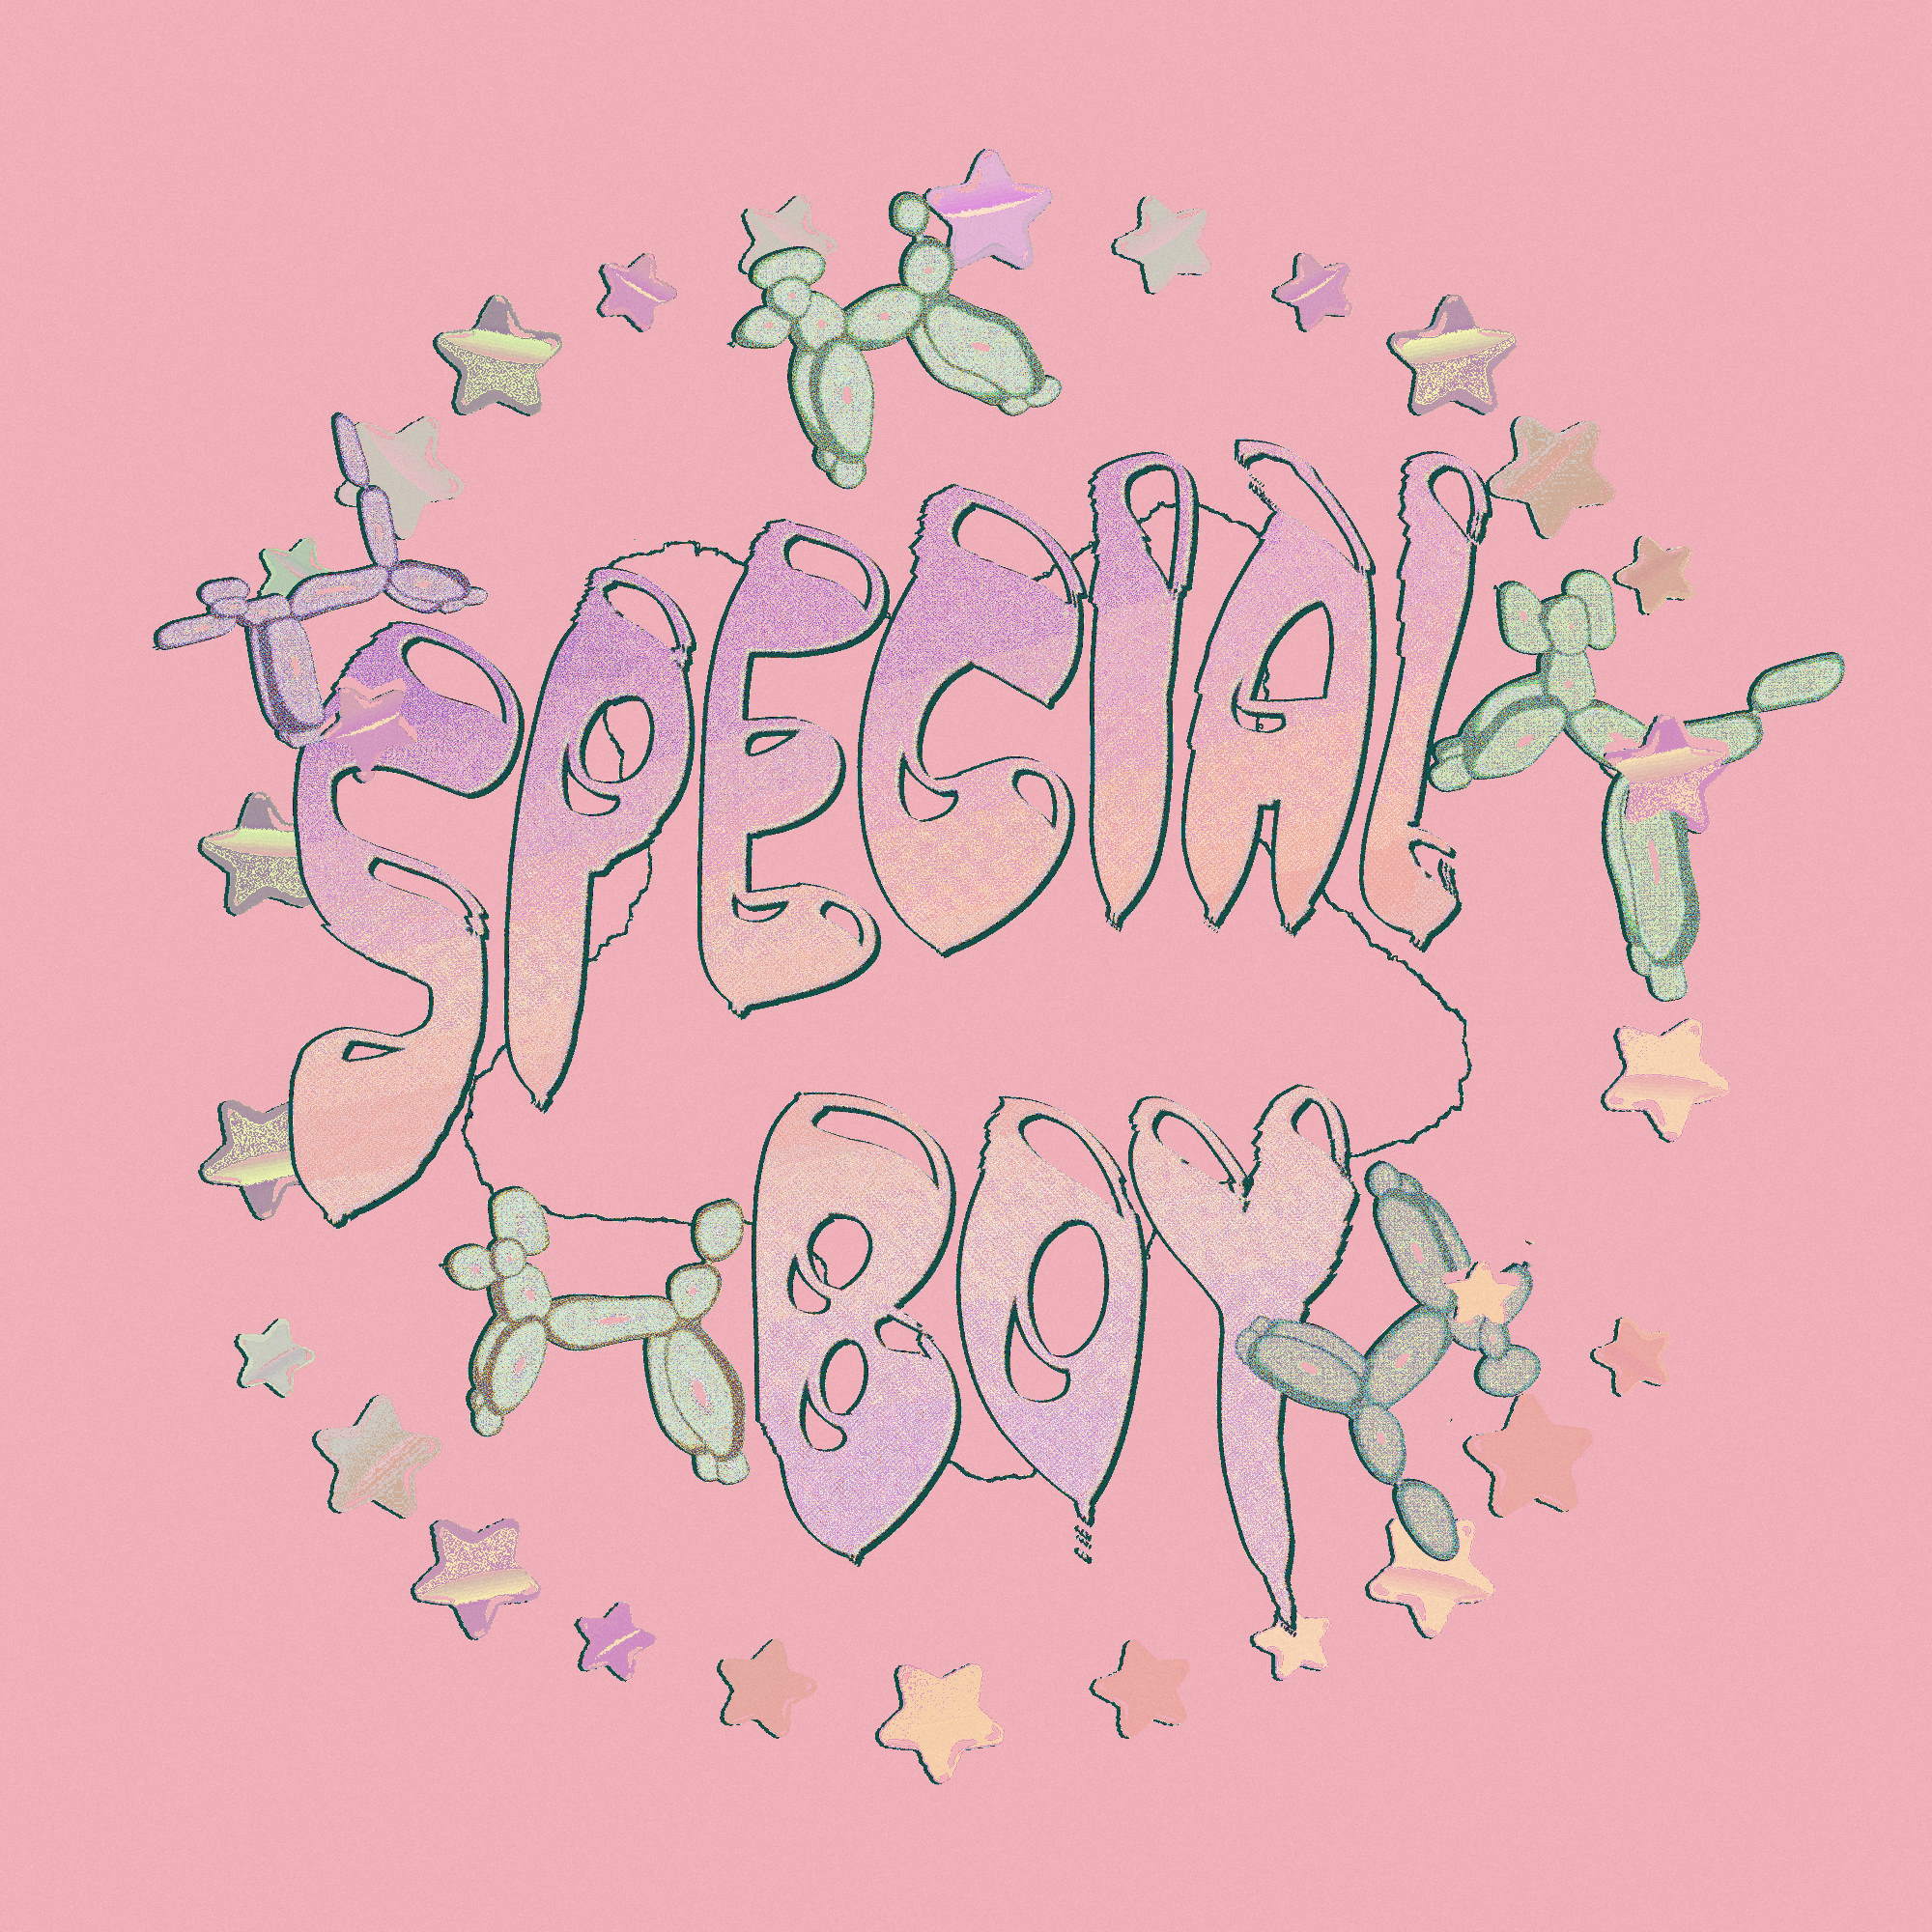 special boy